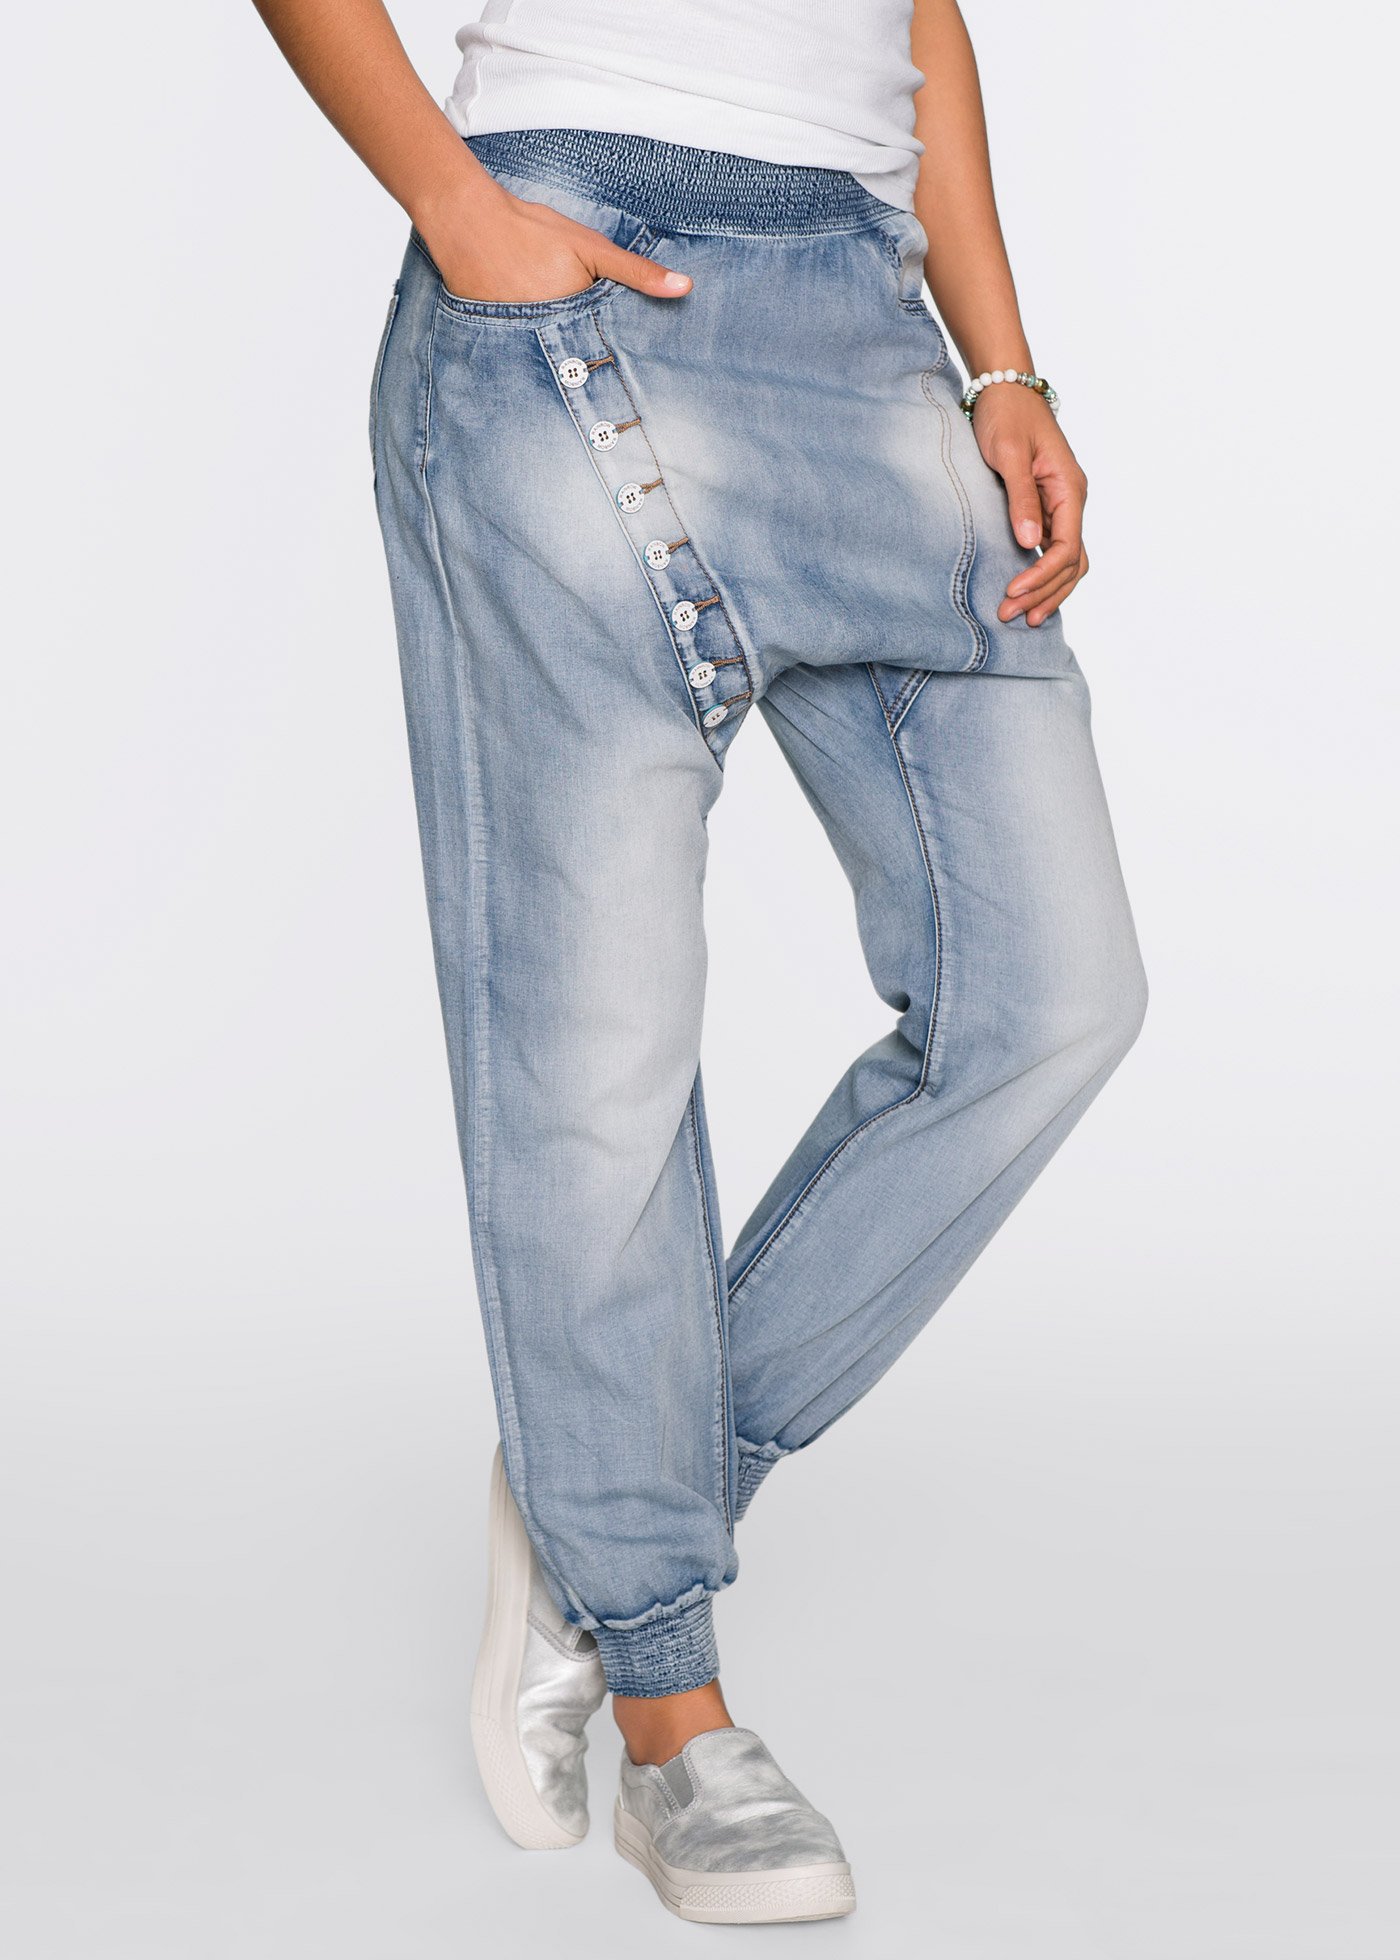 Что такое джинсы багги